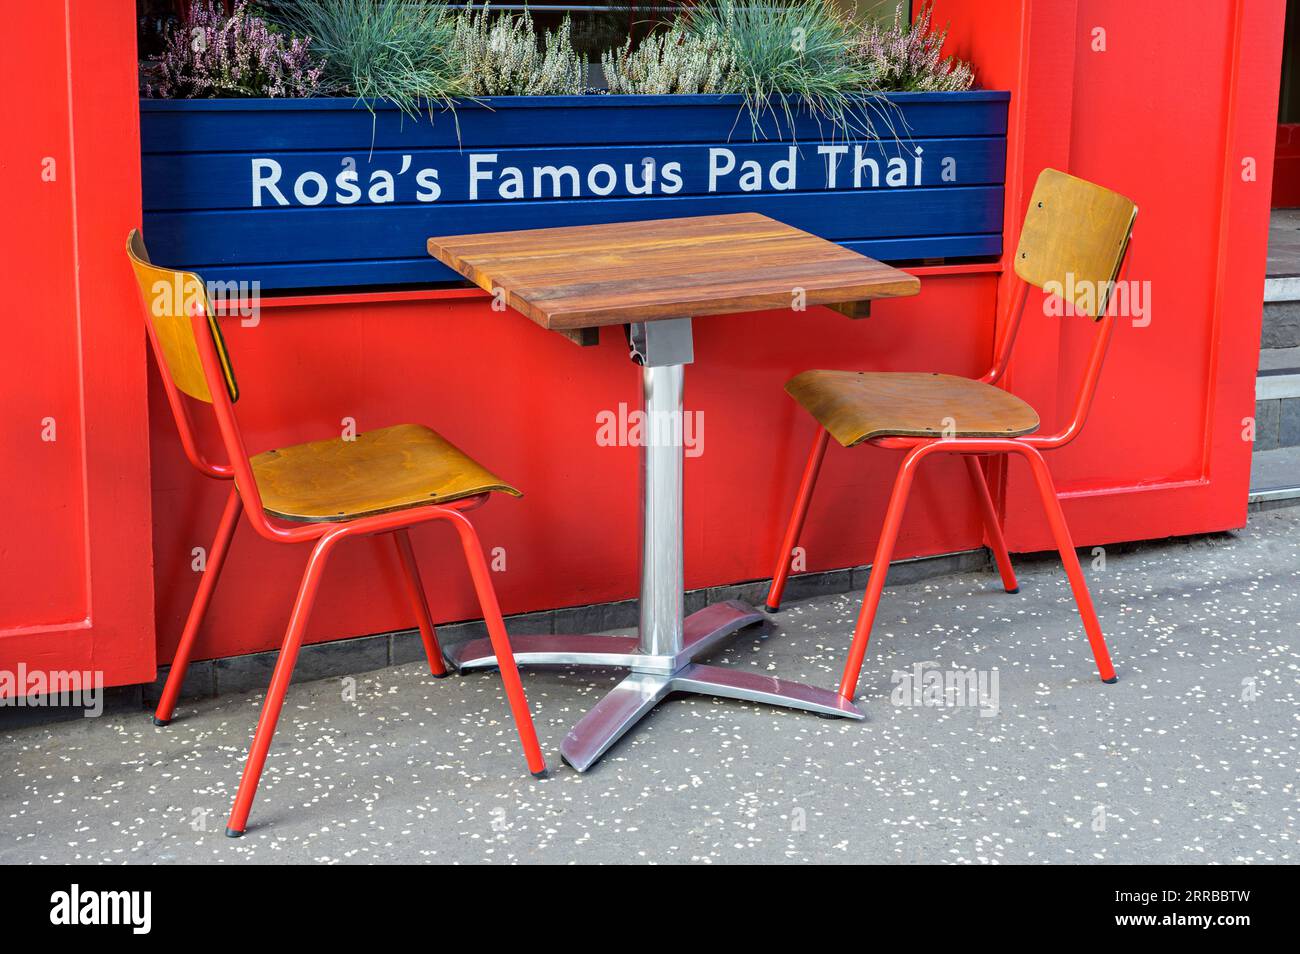 Table vide à l'extérieur du célèbre restaurant Pad Thai de Rosa, Glasgow, Écosse, Royaume-Uni, Europe Banque D'Images